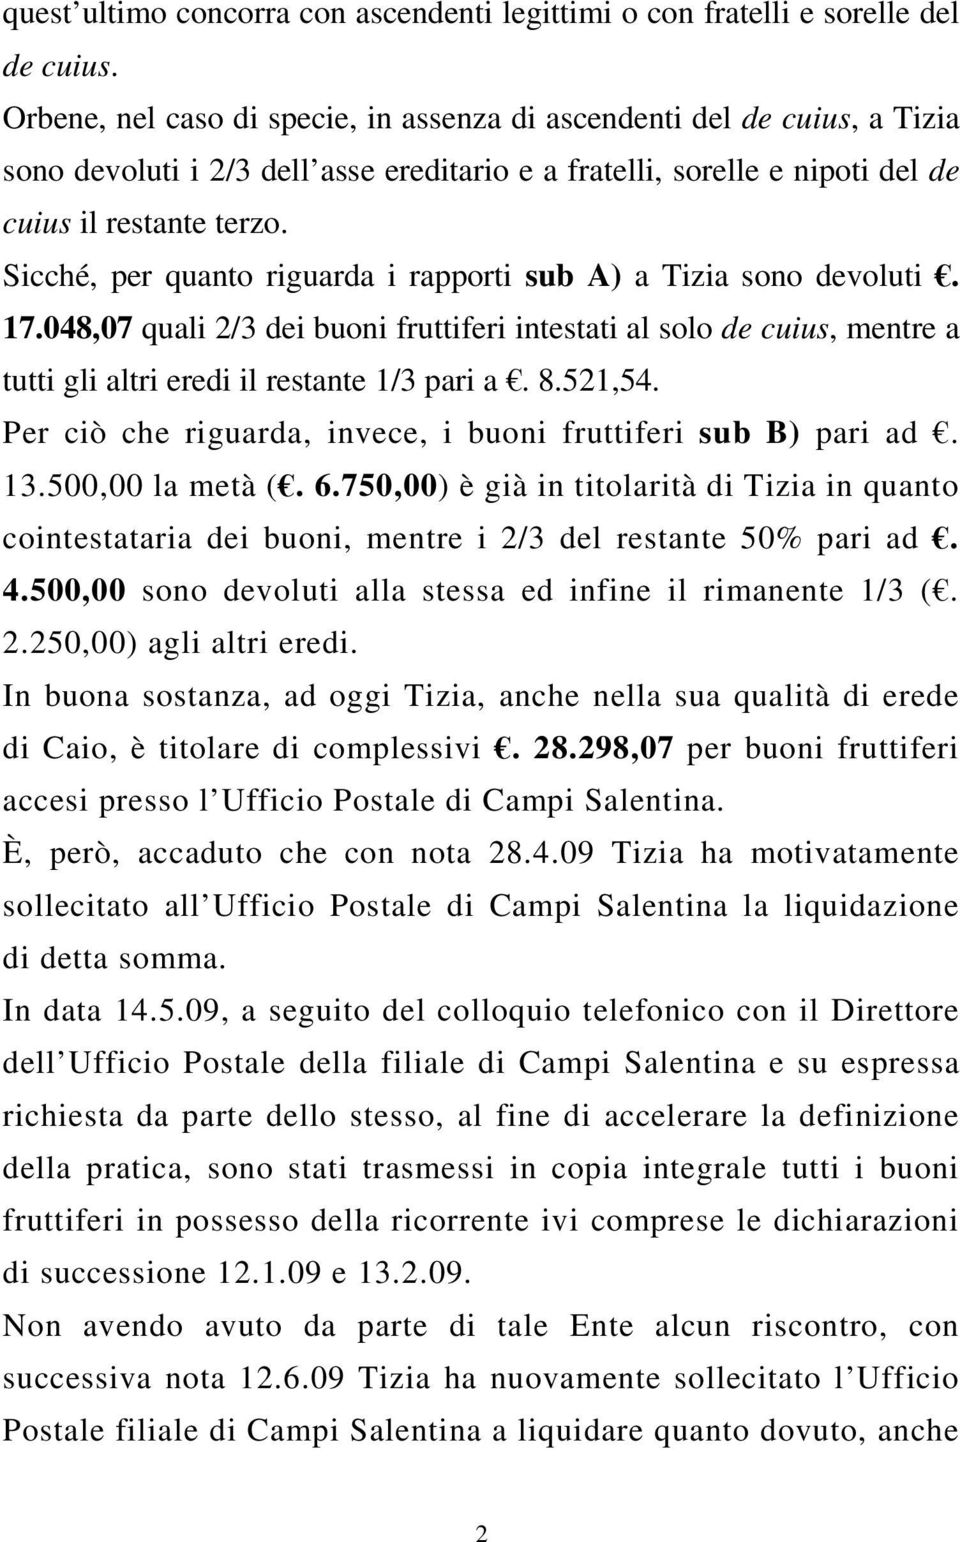 Sicché, per quanto riguarda i rapporti sub A) a Tizia sono devoluti. 17.048,07 quali 2/3 dei buoni fruttiferi intestati al solo de cuius, mentre a tutti gli altri eredi il restante 1/3 pari a. 8.